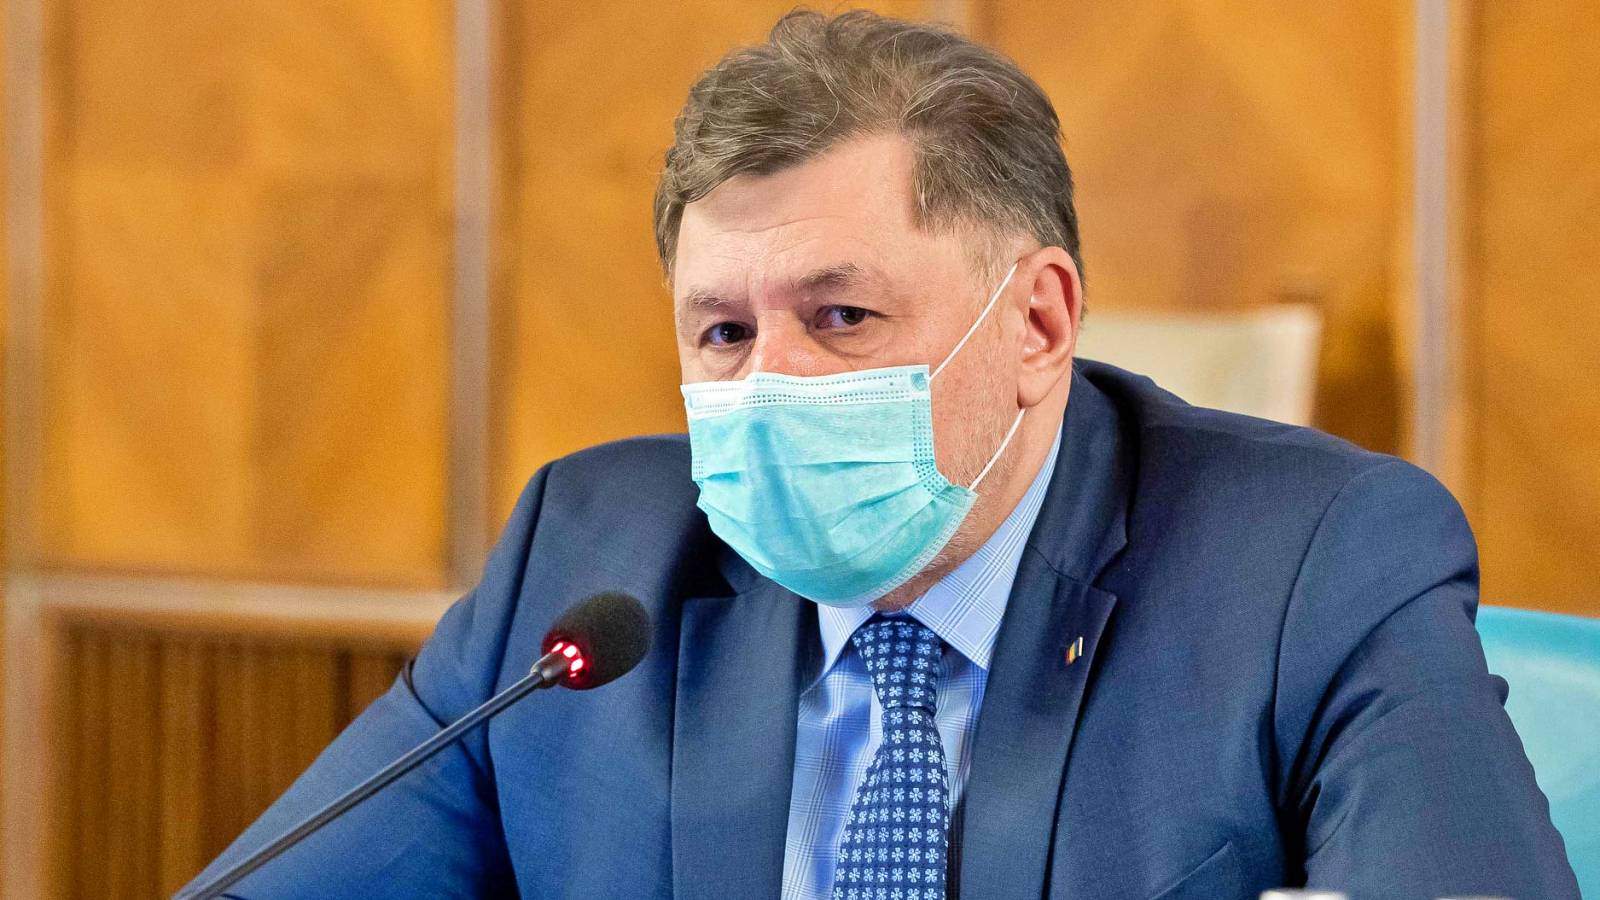 Minister Zdrowia OSTATNI CZAS Informacja zwrócona natychmiastową uwagę Rumunów